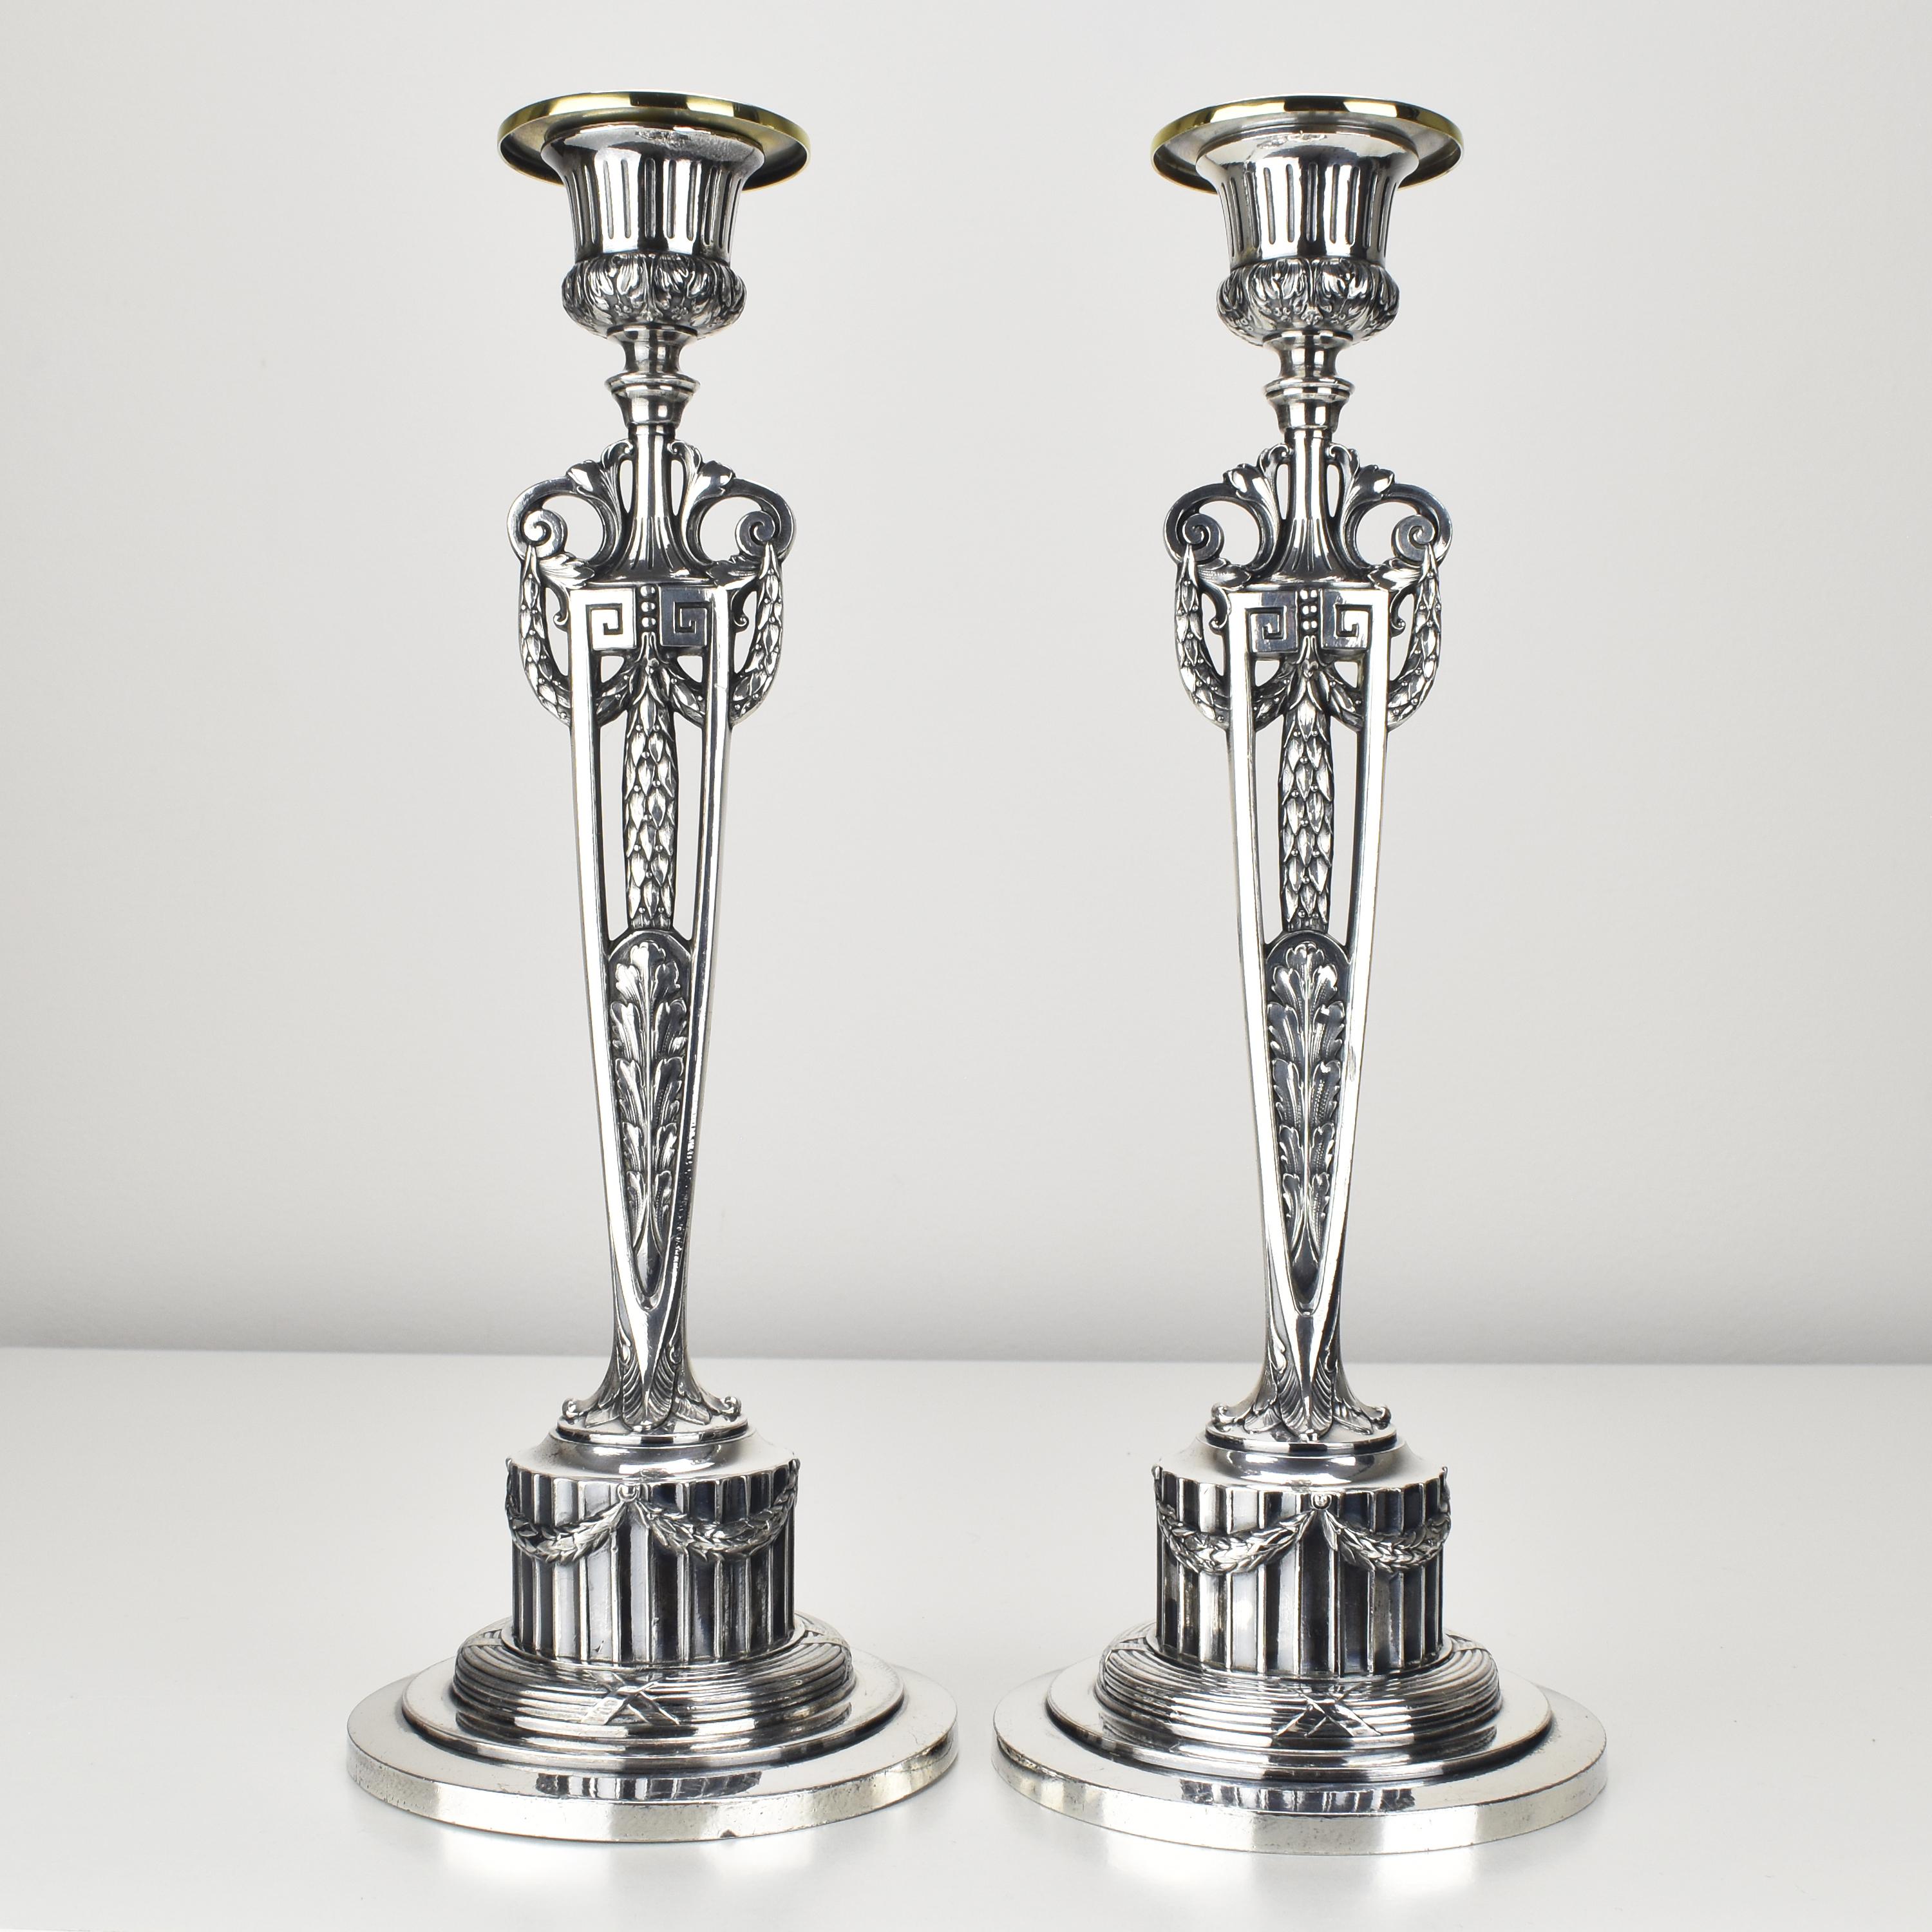 Ein wunderschönes Paar antiker Kerzenhalter von WMF ist ein beeindruckendes Beispiel für die Kunstfertigkeit versilberten Zinns, das in der Zeit des Jugendstils um 1900 hergestellt wurde. Sie gehören zur Serie 